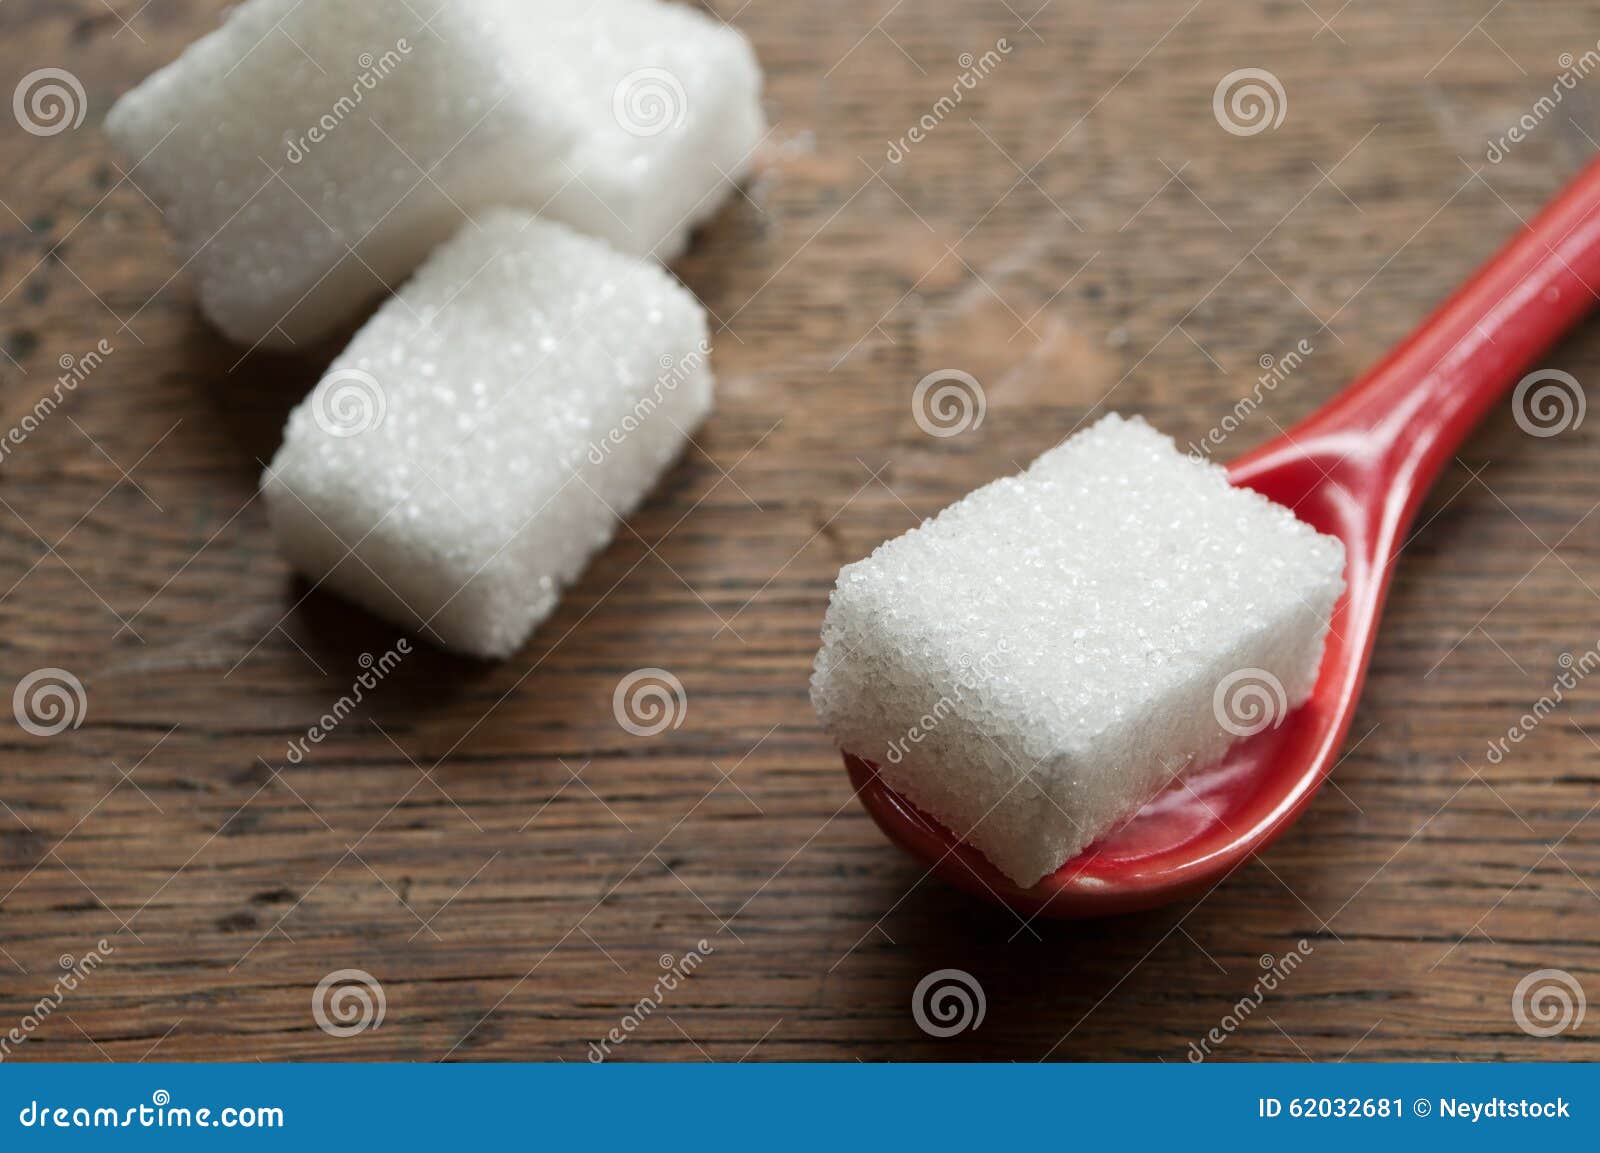 Столовая ложка сахара в кубиках. Кубики сахара. Ложка с сахаром. Кубик сахара на ложке. Сахар кубиками на ложке.